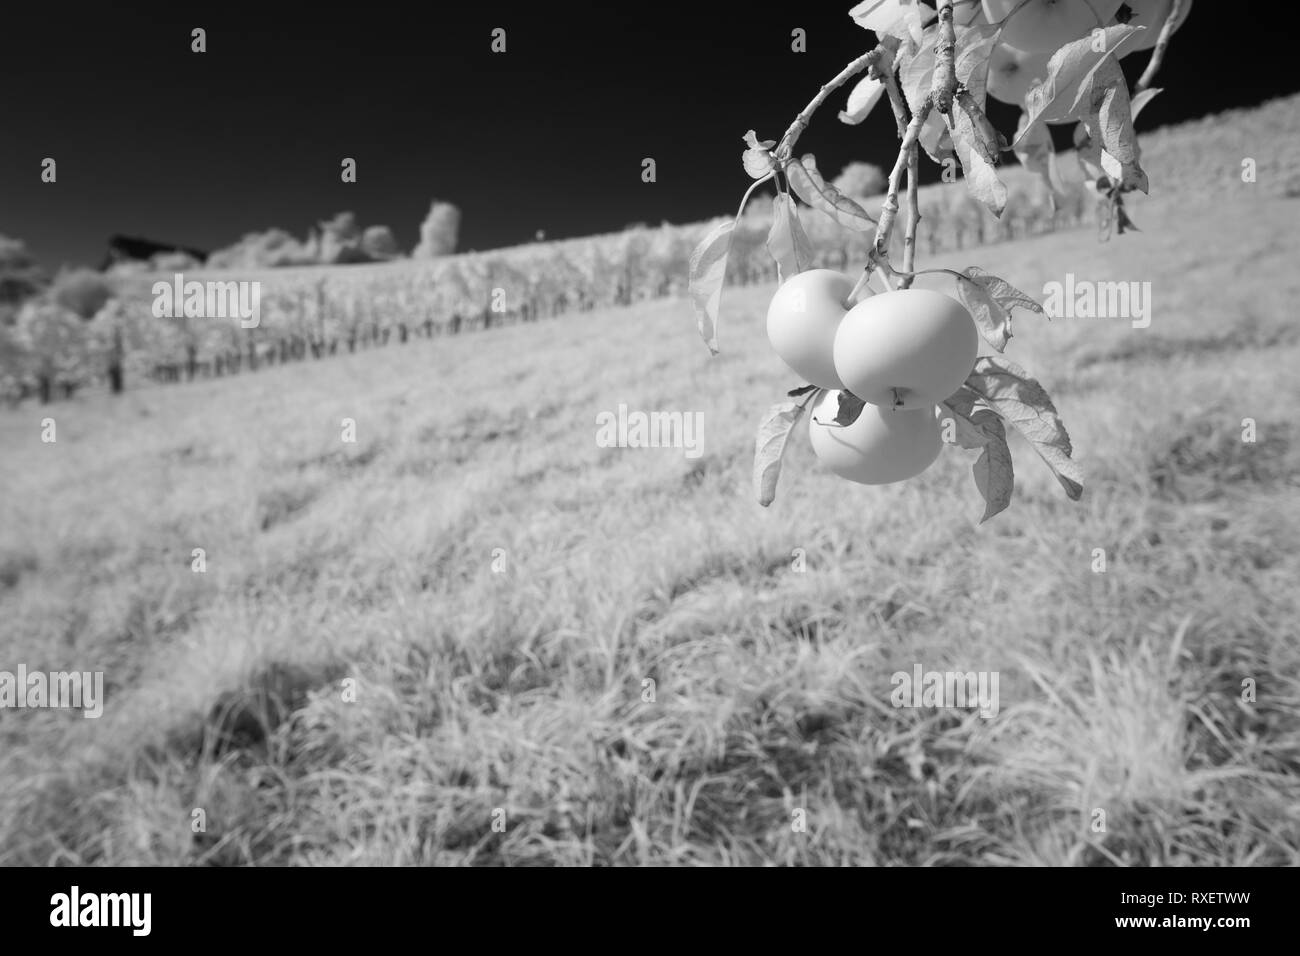 Reifen Apfel Früchte an einem Obstbaum Niederlassung in Schwarz und Weiß Infrarot Stockfoto